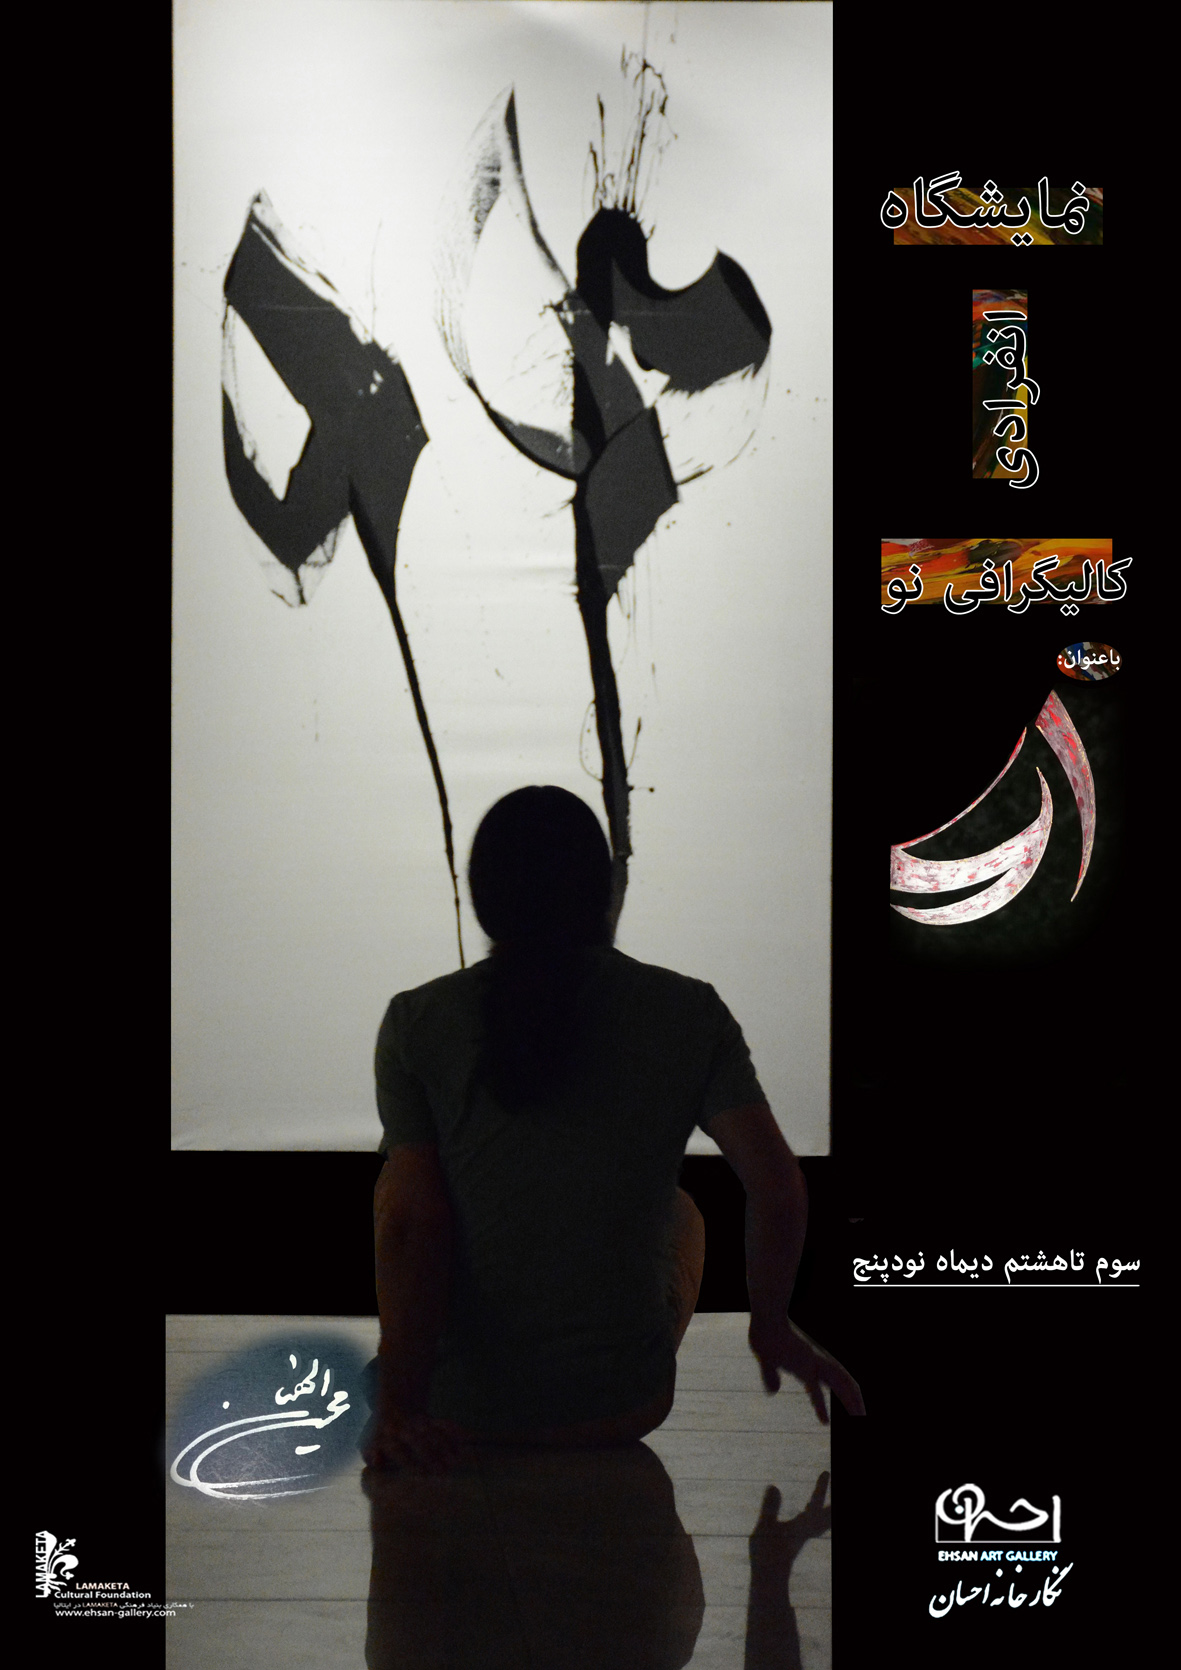 نمایشگاه کالیگرافی نو محسن الهیان با عنوان 